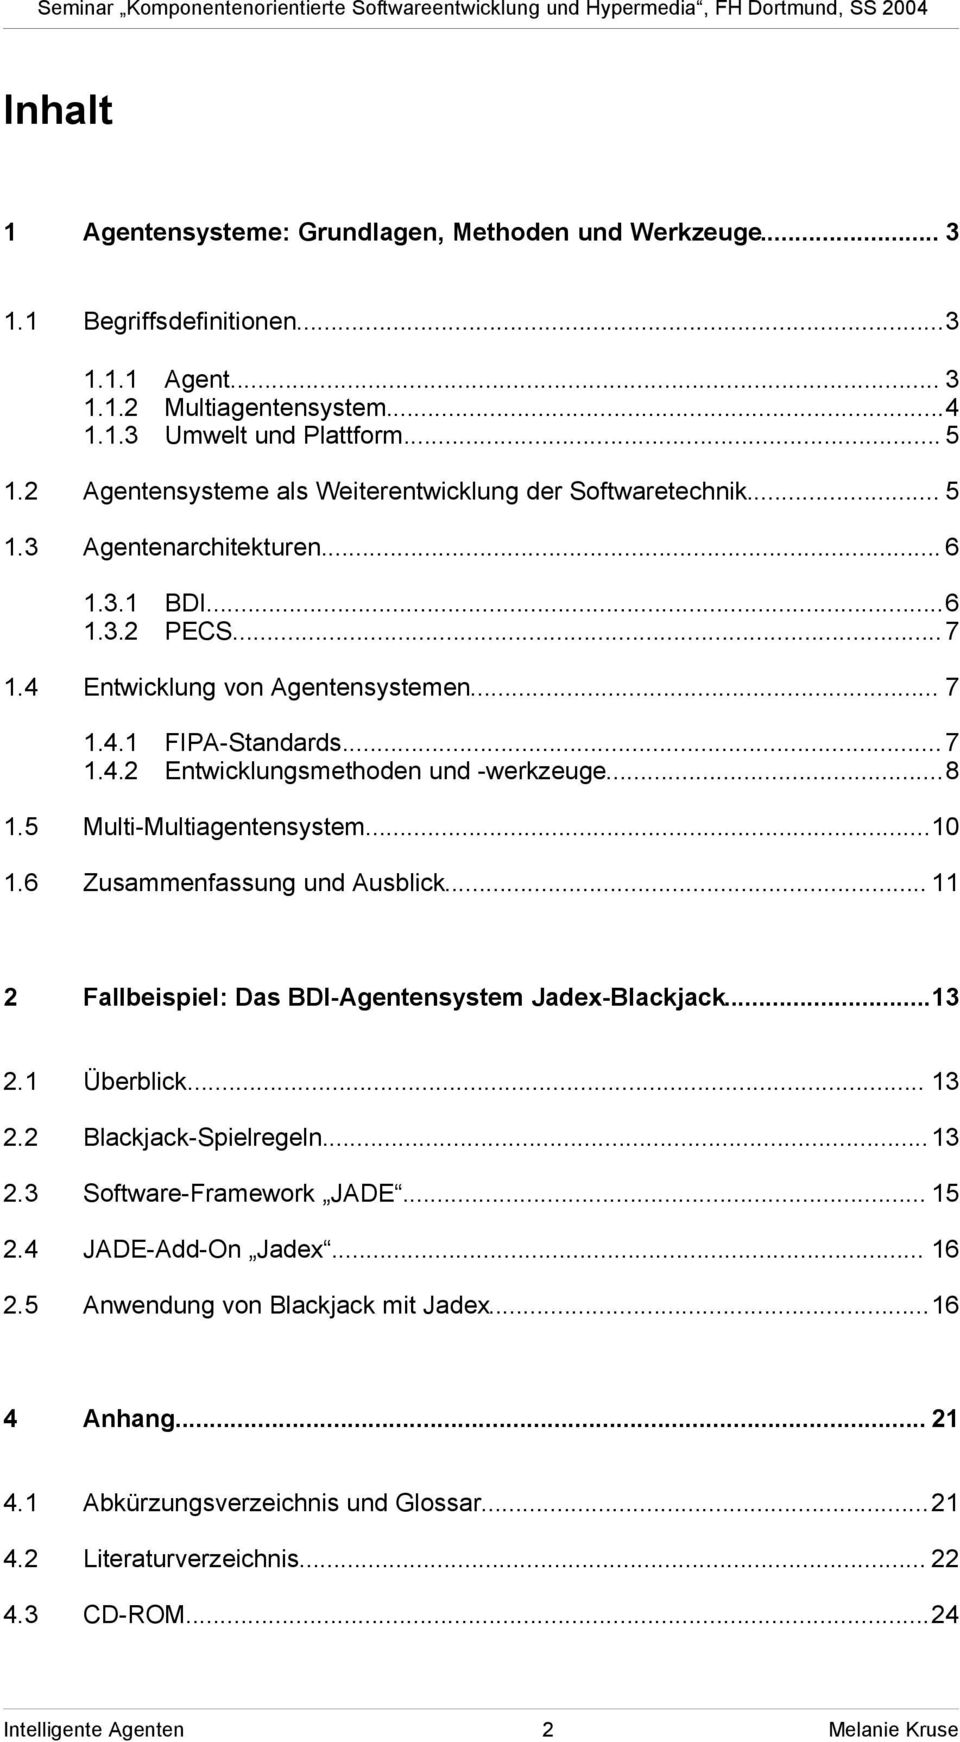 ..8 1.5 Multi-Multiagentensystem...10 1.6 Zusammenfassung und Ausblick... 11 2 Fallbeispiel: Das BDI-Agentensystem Jadex-Blackjack...13 2.1 Überblick... 13 2.2 Blackjack-Spielregeln...13 2.3 Software-Framework JADE.